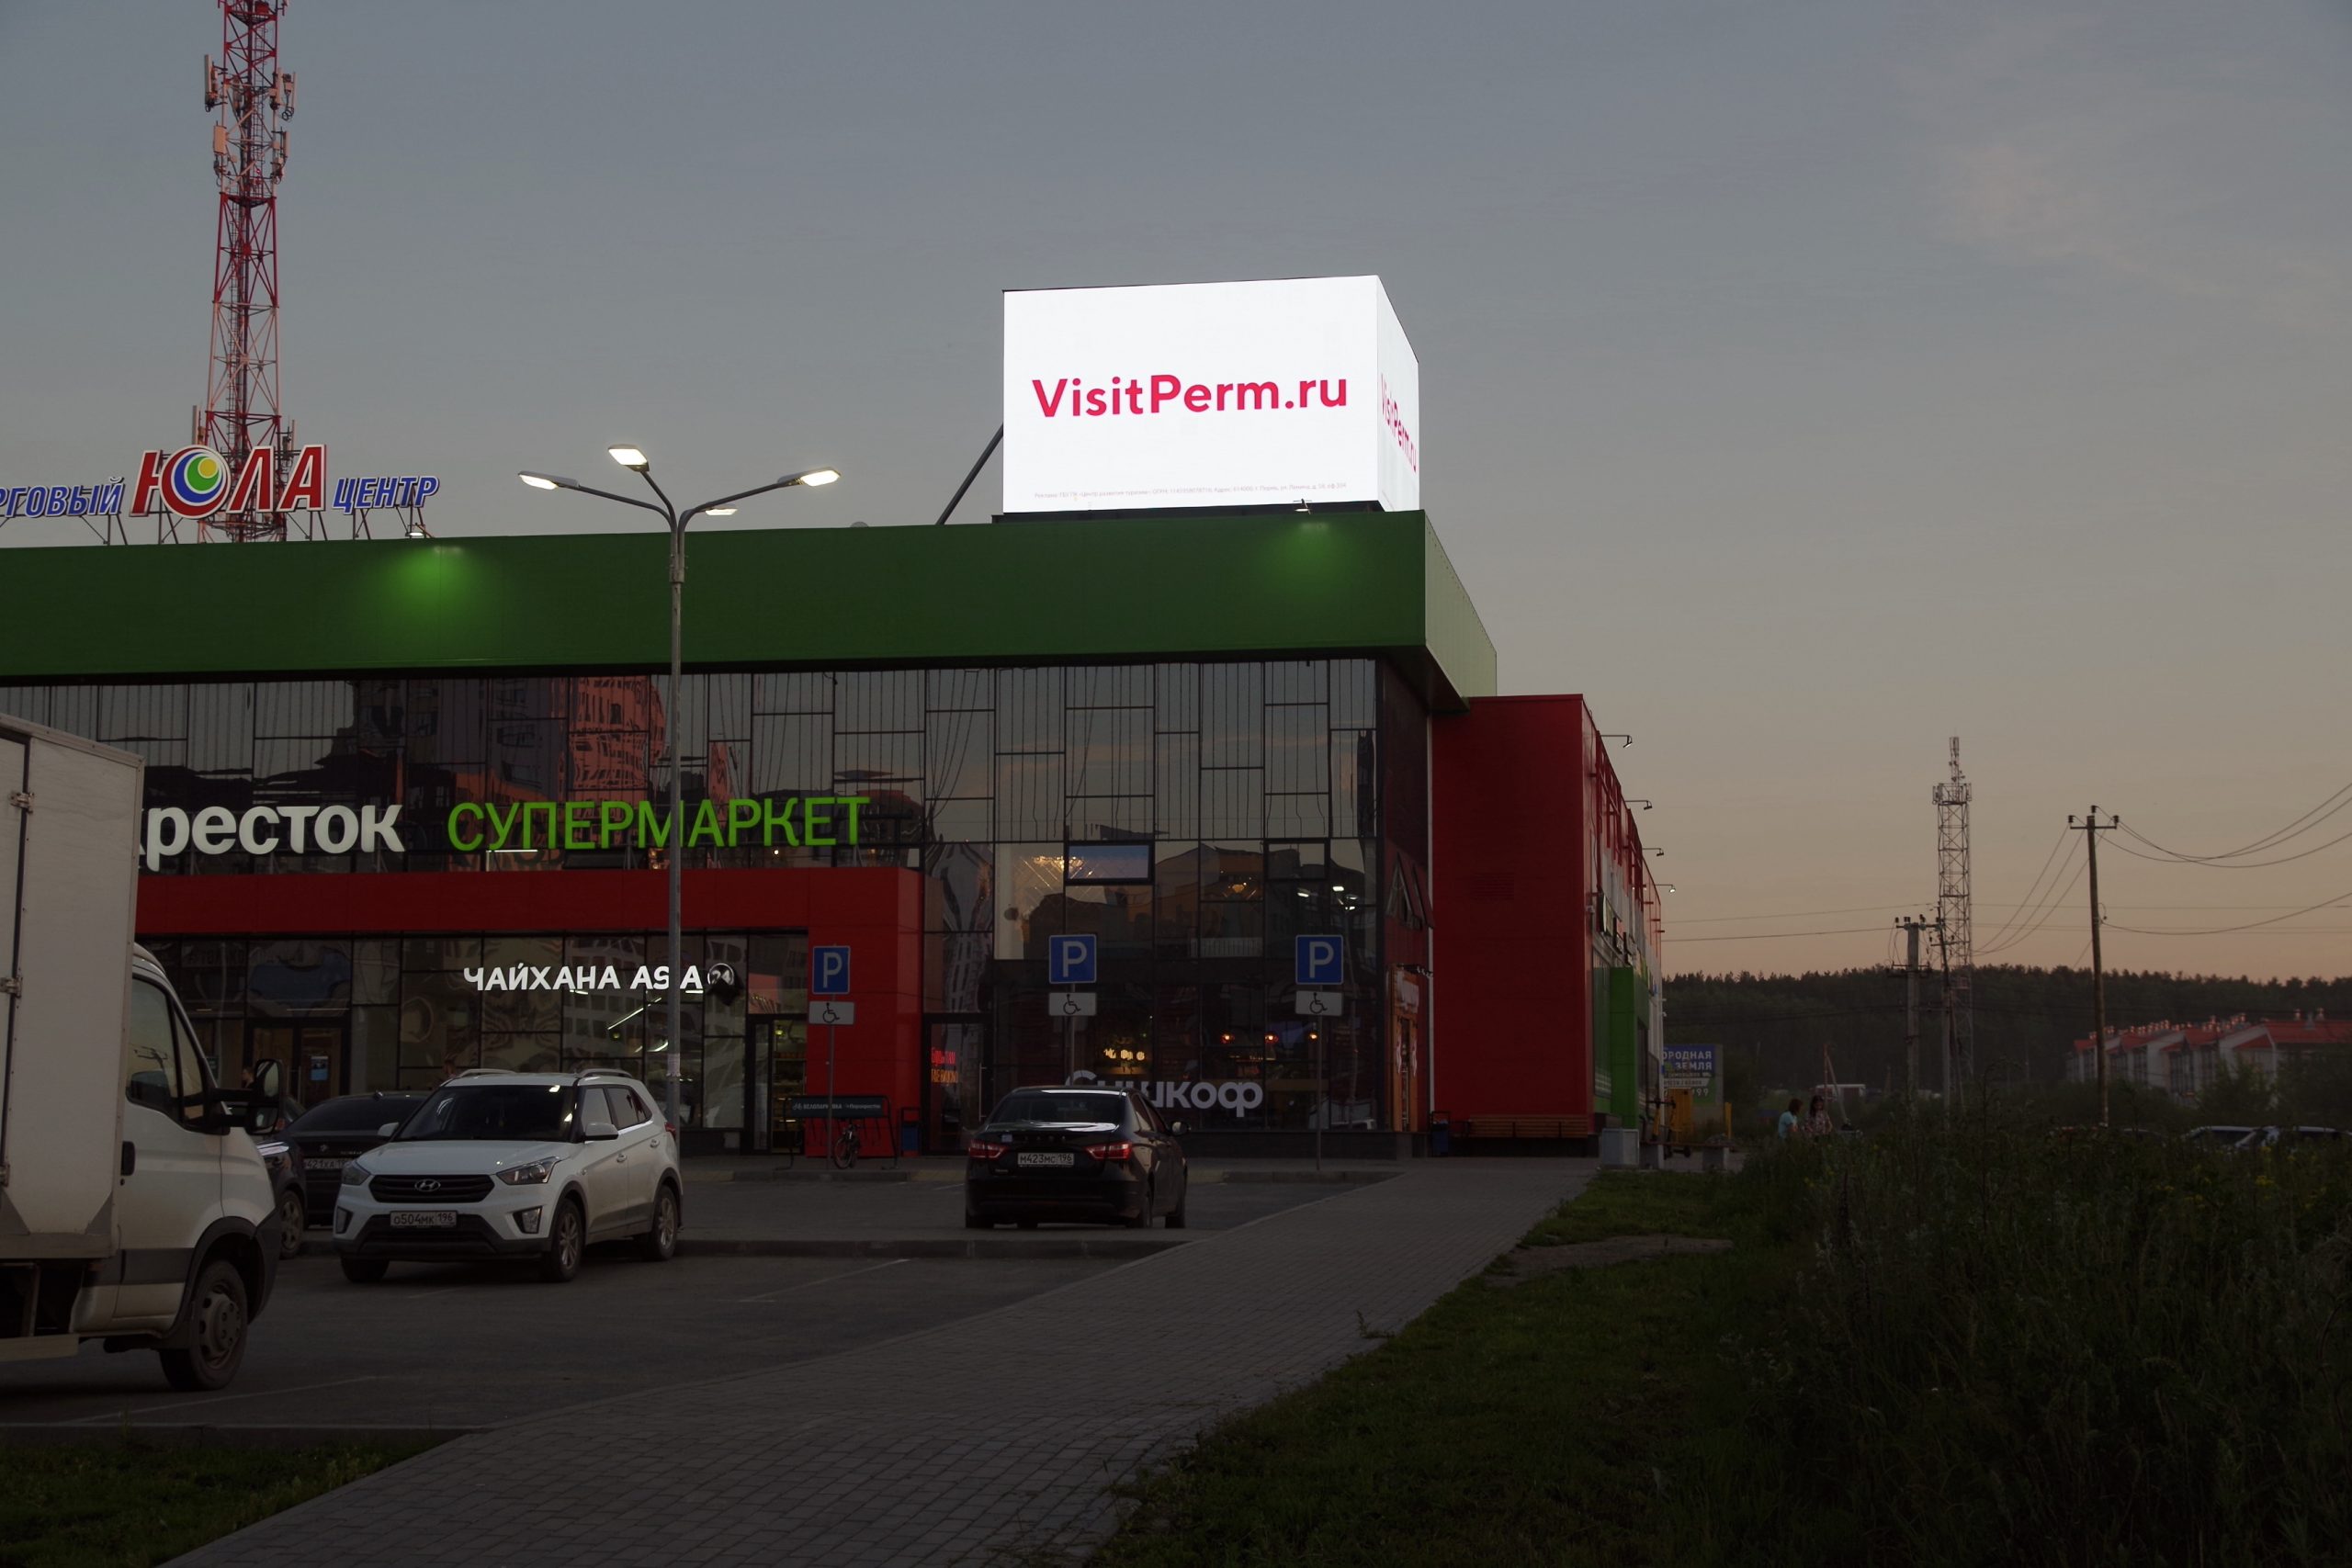 VisitPerm.ru — кампания для Министерства по туризму и молодёжной политике Пермского края